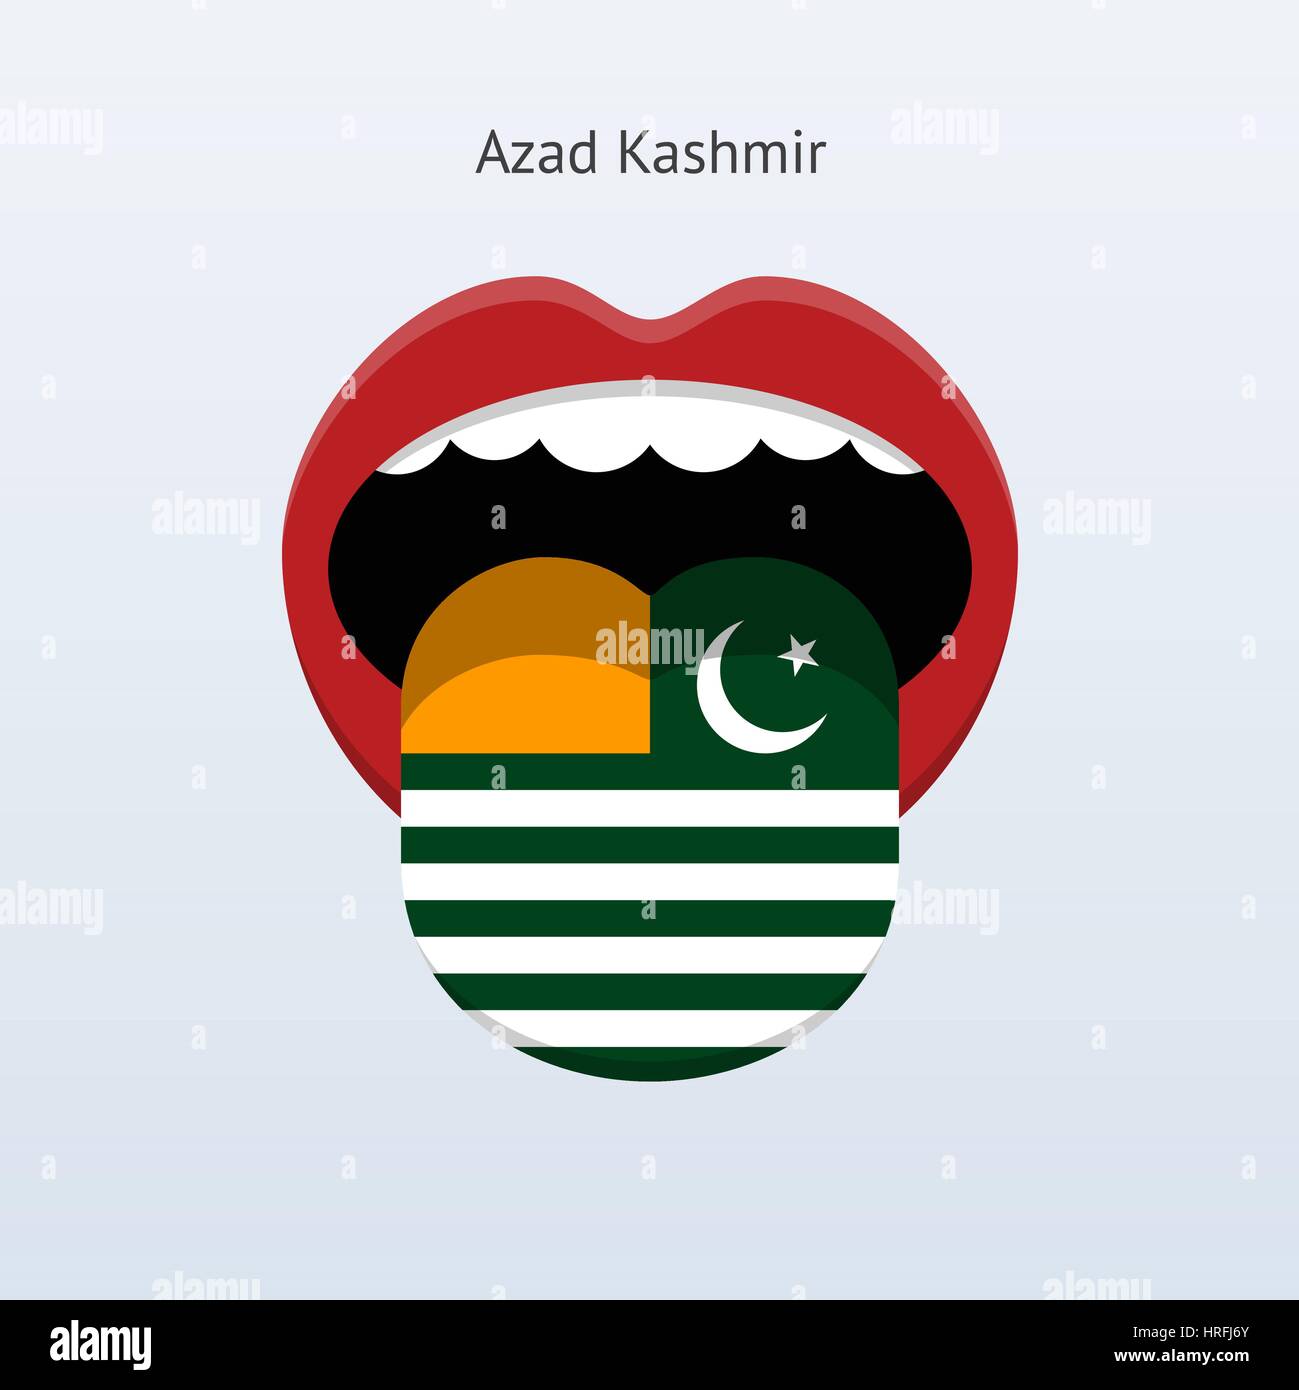 L'Azad Cachemire langue. Résumé Les langue. Vector illustration. Illustration de Vecteur